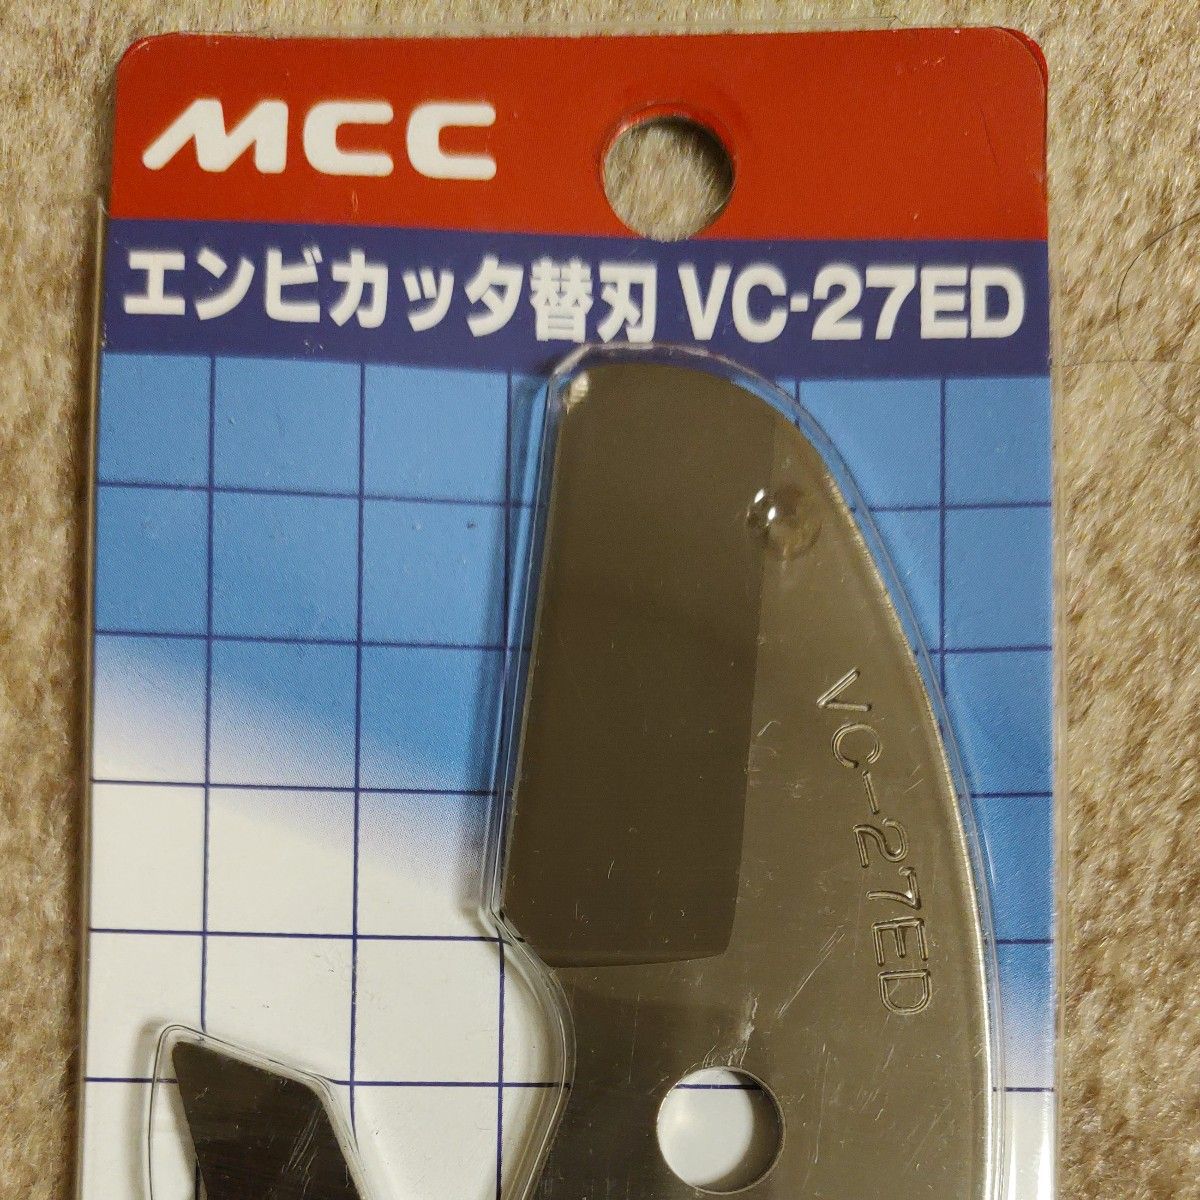 MCC エンビカッタ替刃 VCE27ED VCE0327 最大切断能力φ27mm